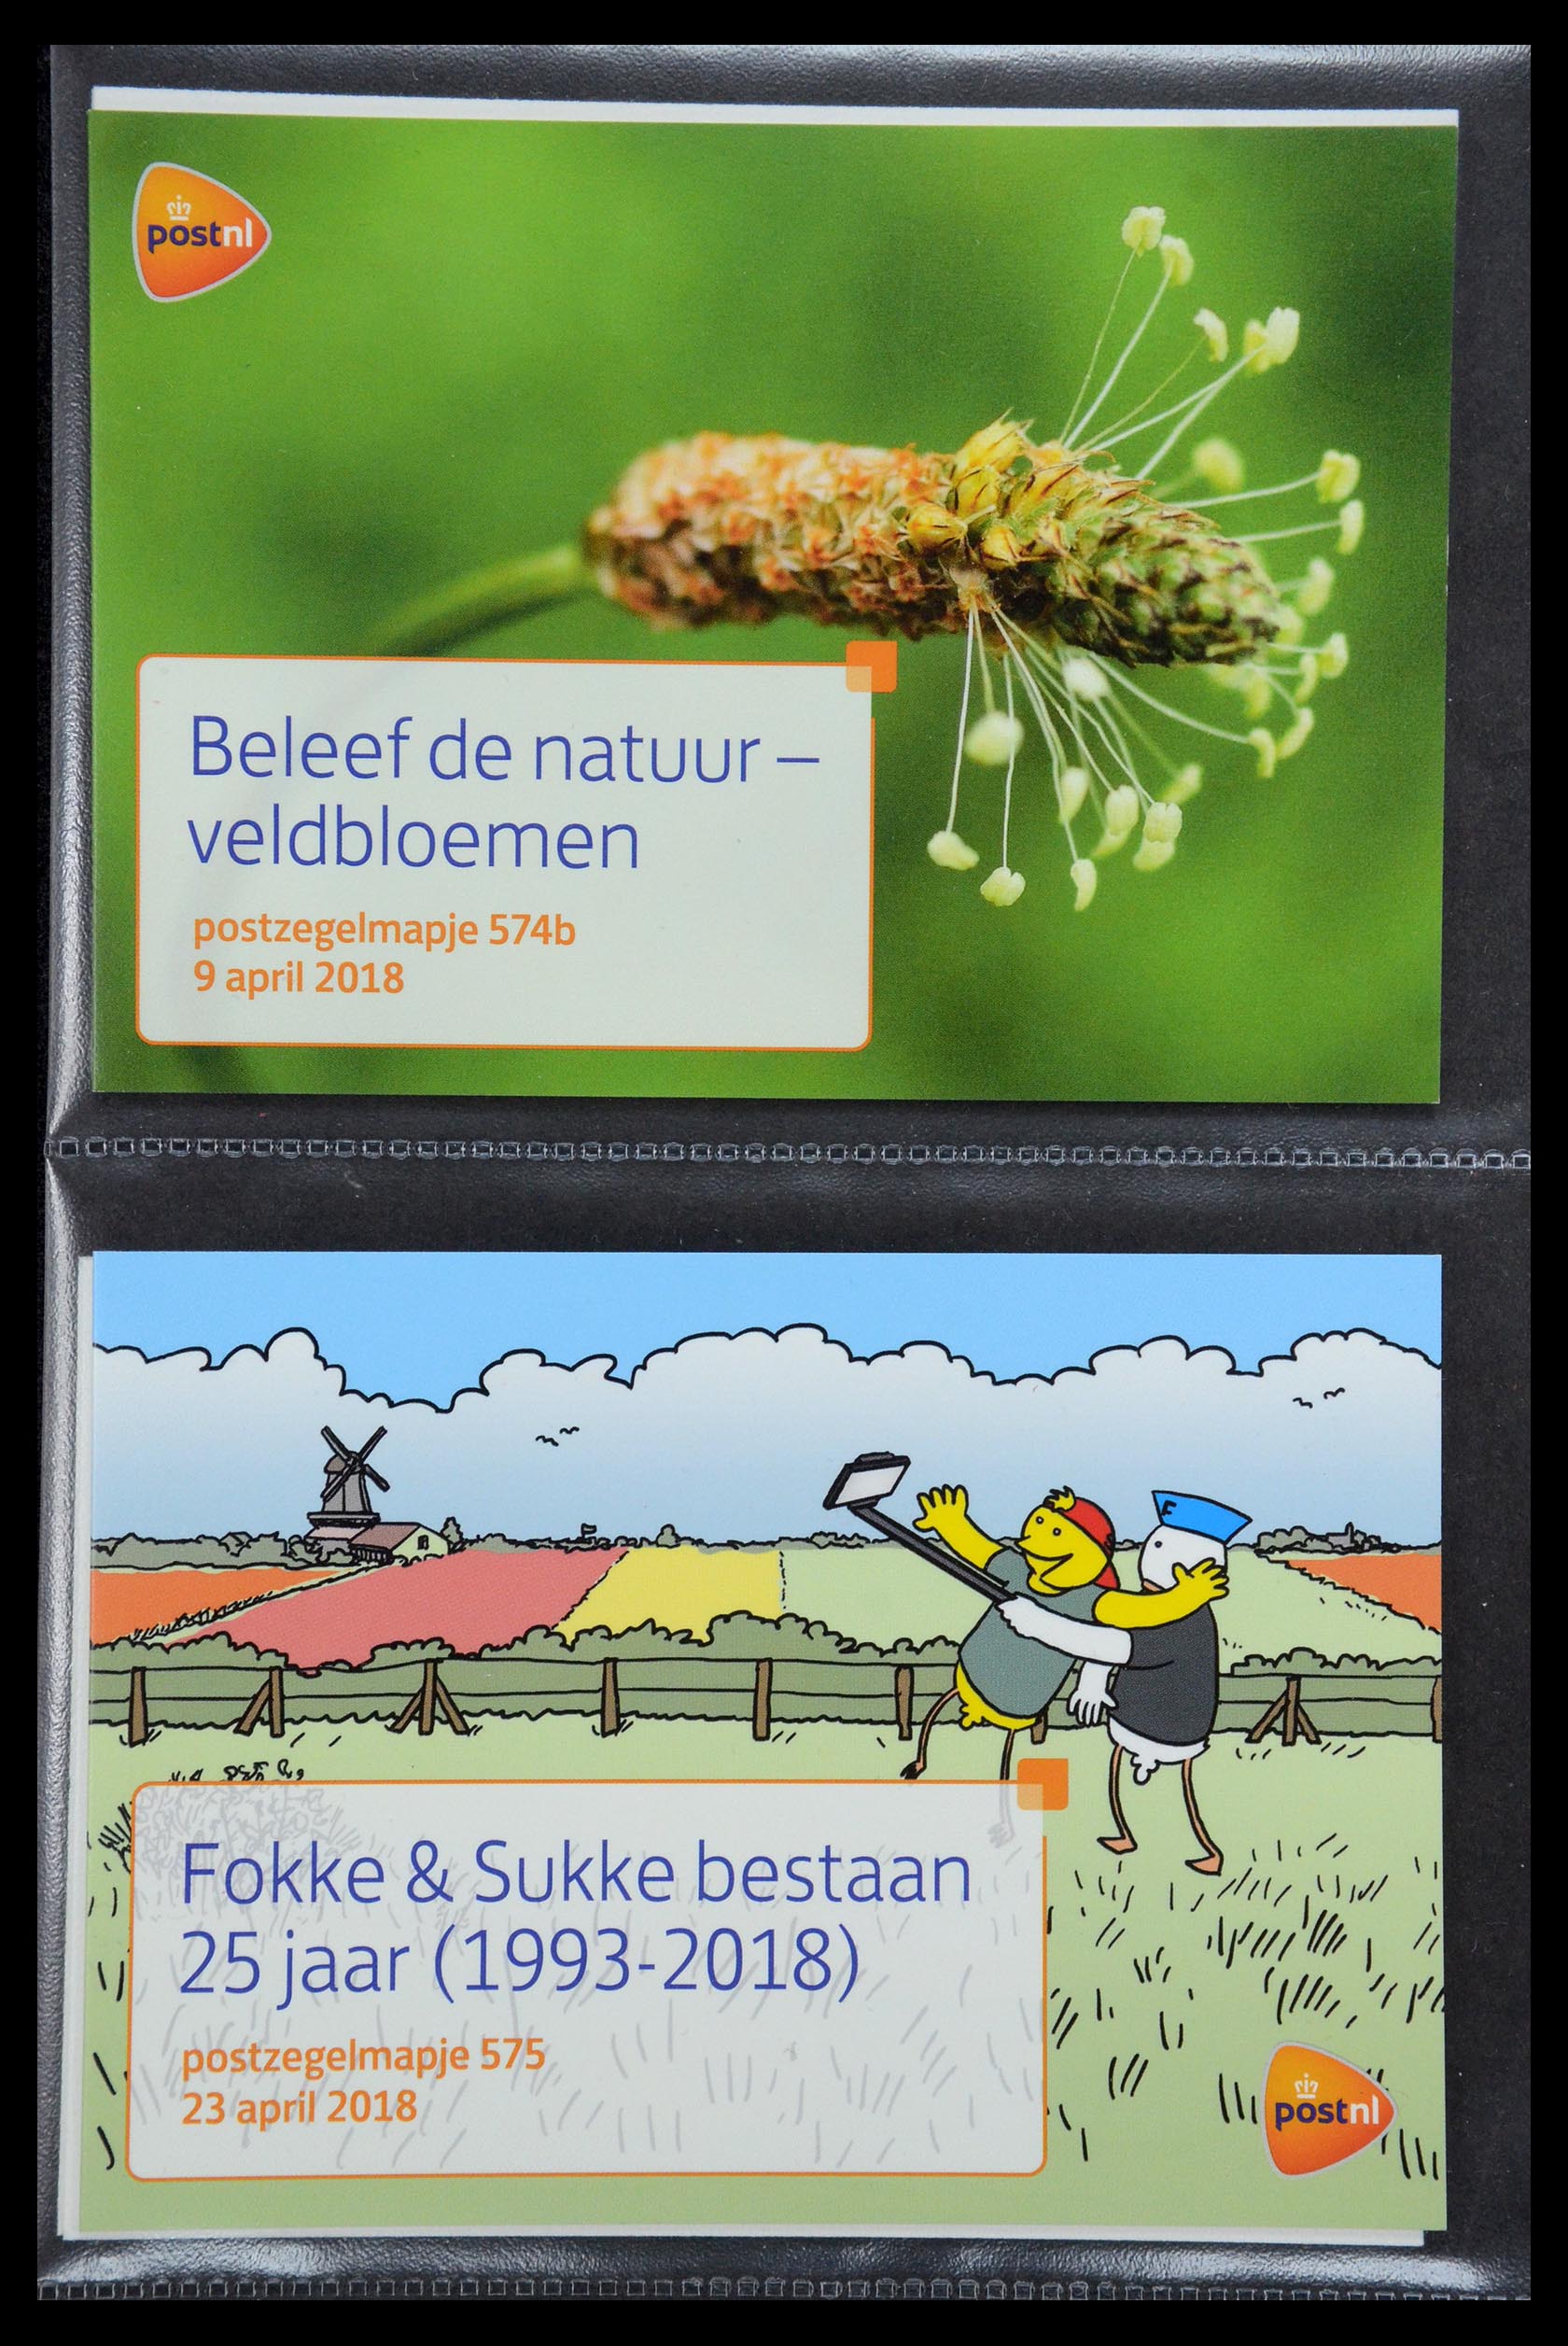 35187 346 - Stamp Collection 35187 Netherlands PTT presentation packs 1982-2019!